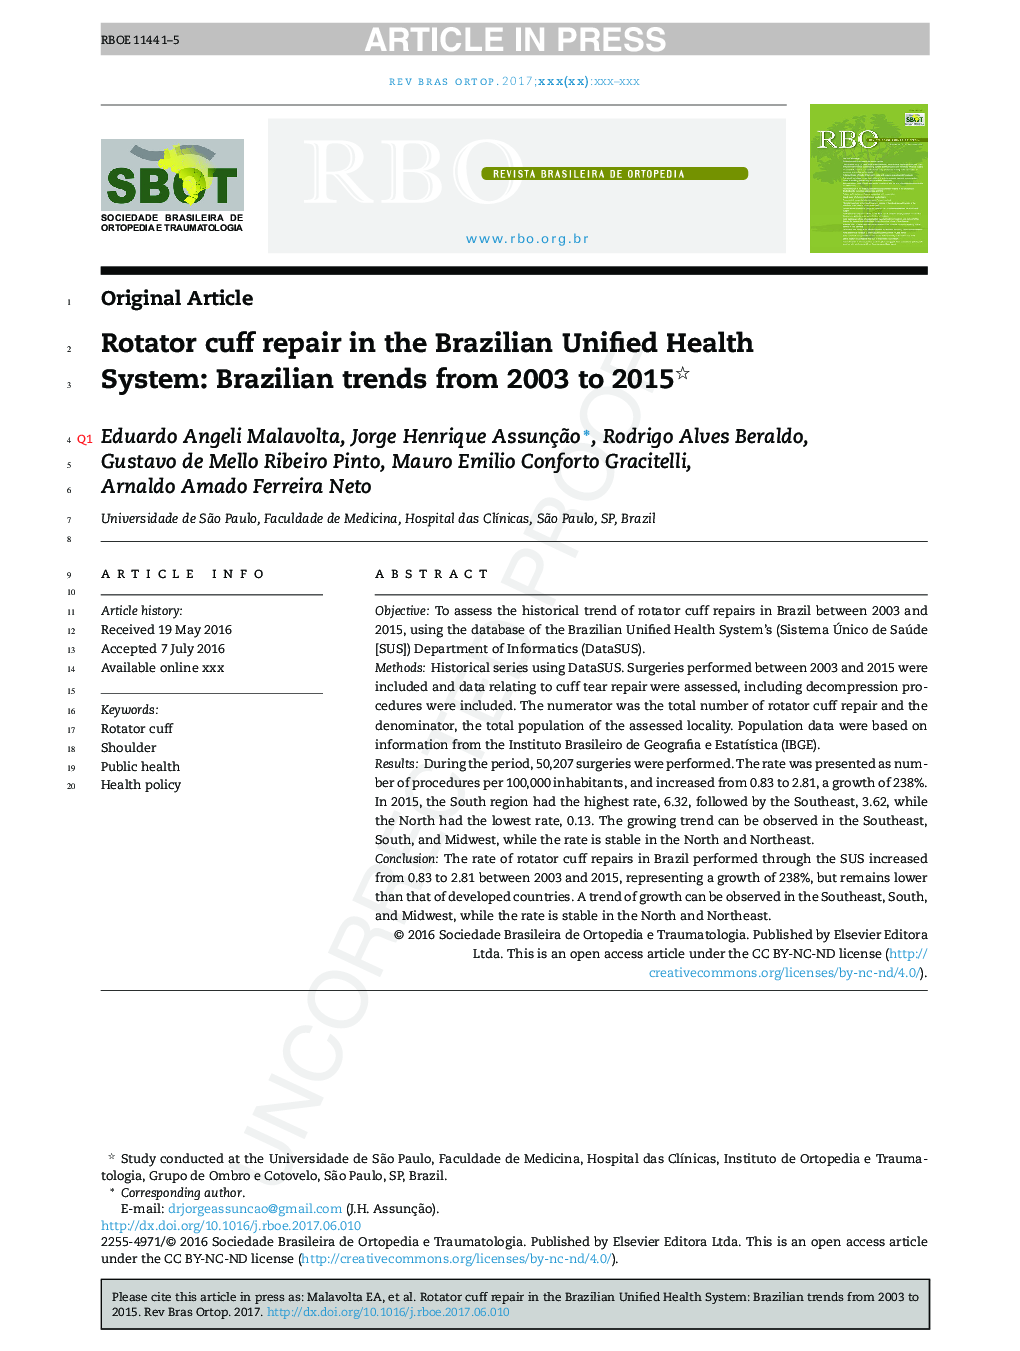 تعمیر کتان روتاتور در سیستم بهداشت یونان برزیل: روند برزیل از سال 2003 تا 2015 